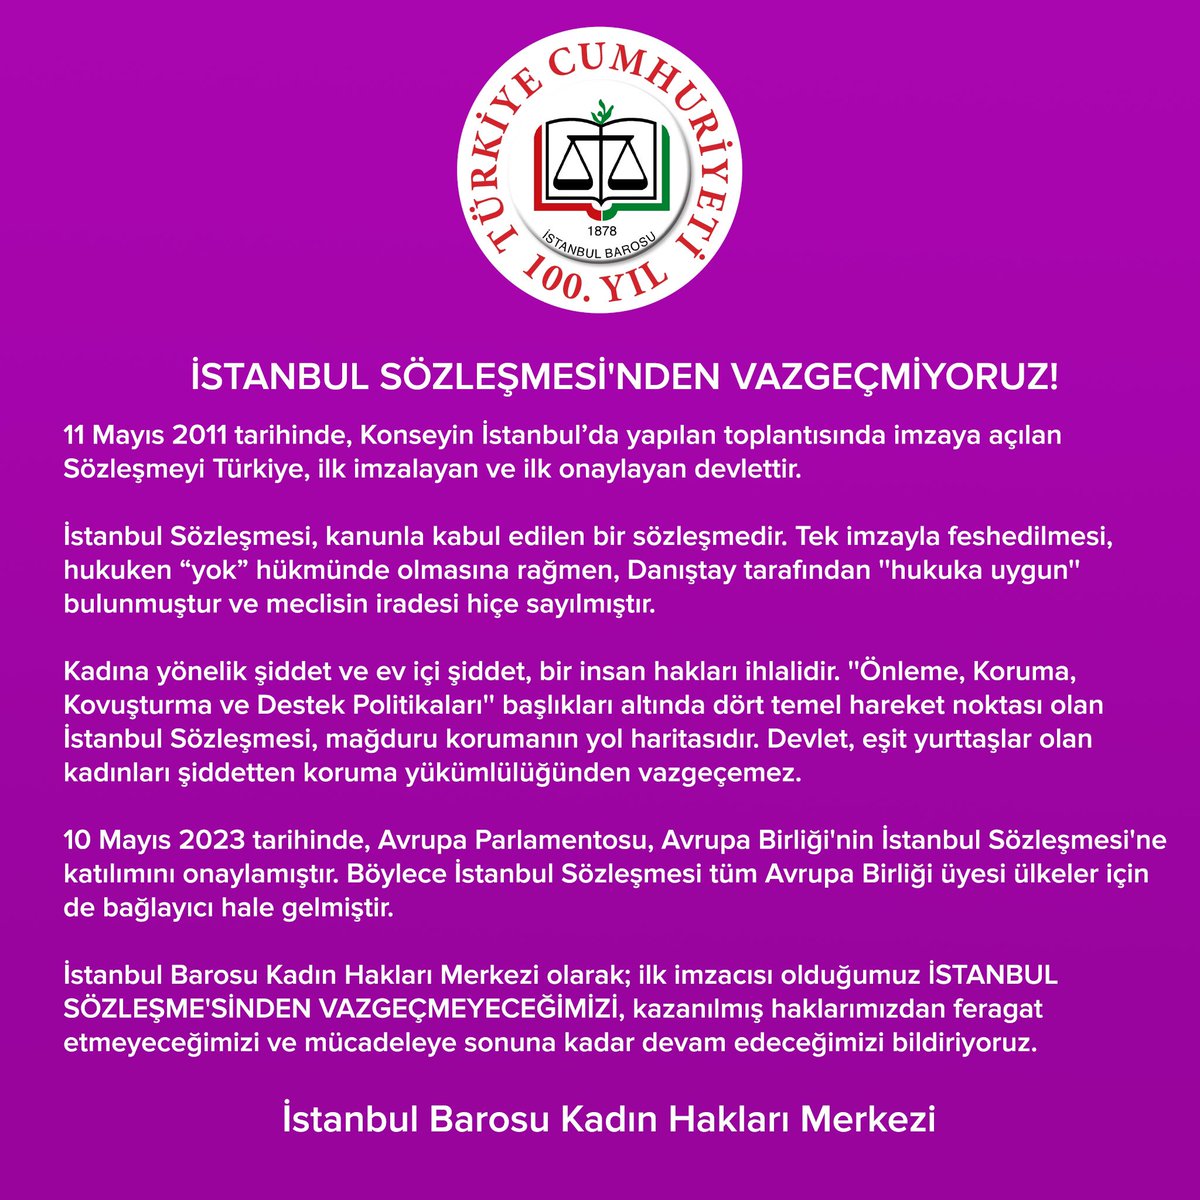 İSTANBUL SÖZLEŞMESİ'NDEN VAZGEÇMİYORUZ!
 
11 Mayıs 2011 tarihinde, Avrupa Konseyi’nin İstanbul’da yapılan toplantısında imzaya açılan Sözleşmeyi Türkiye, ilk imzalayan ve ilk onaylayan devlettir.
 
#istanbulSözleşmesi, kanunla kabul edilen bir sözleşmedir. Tek imzayla